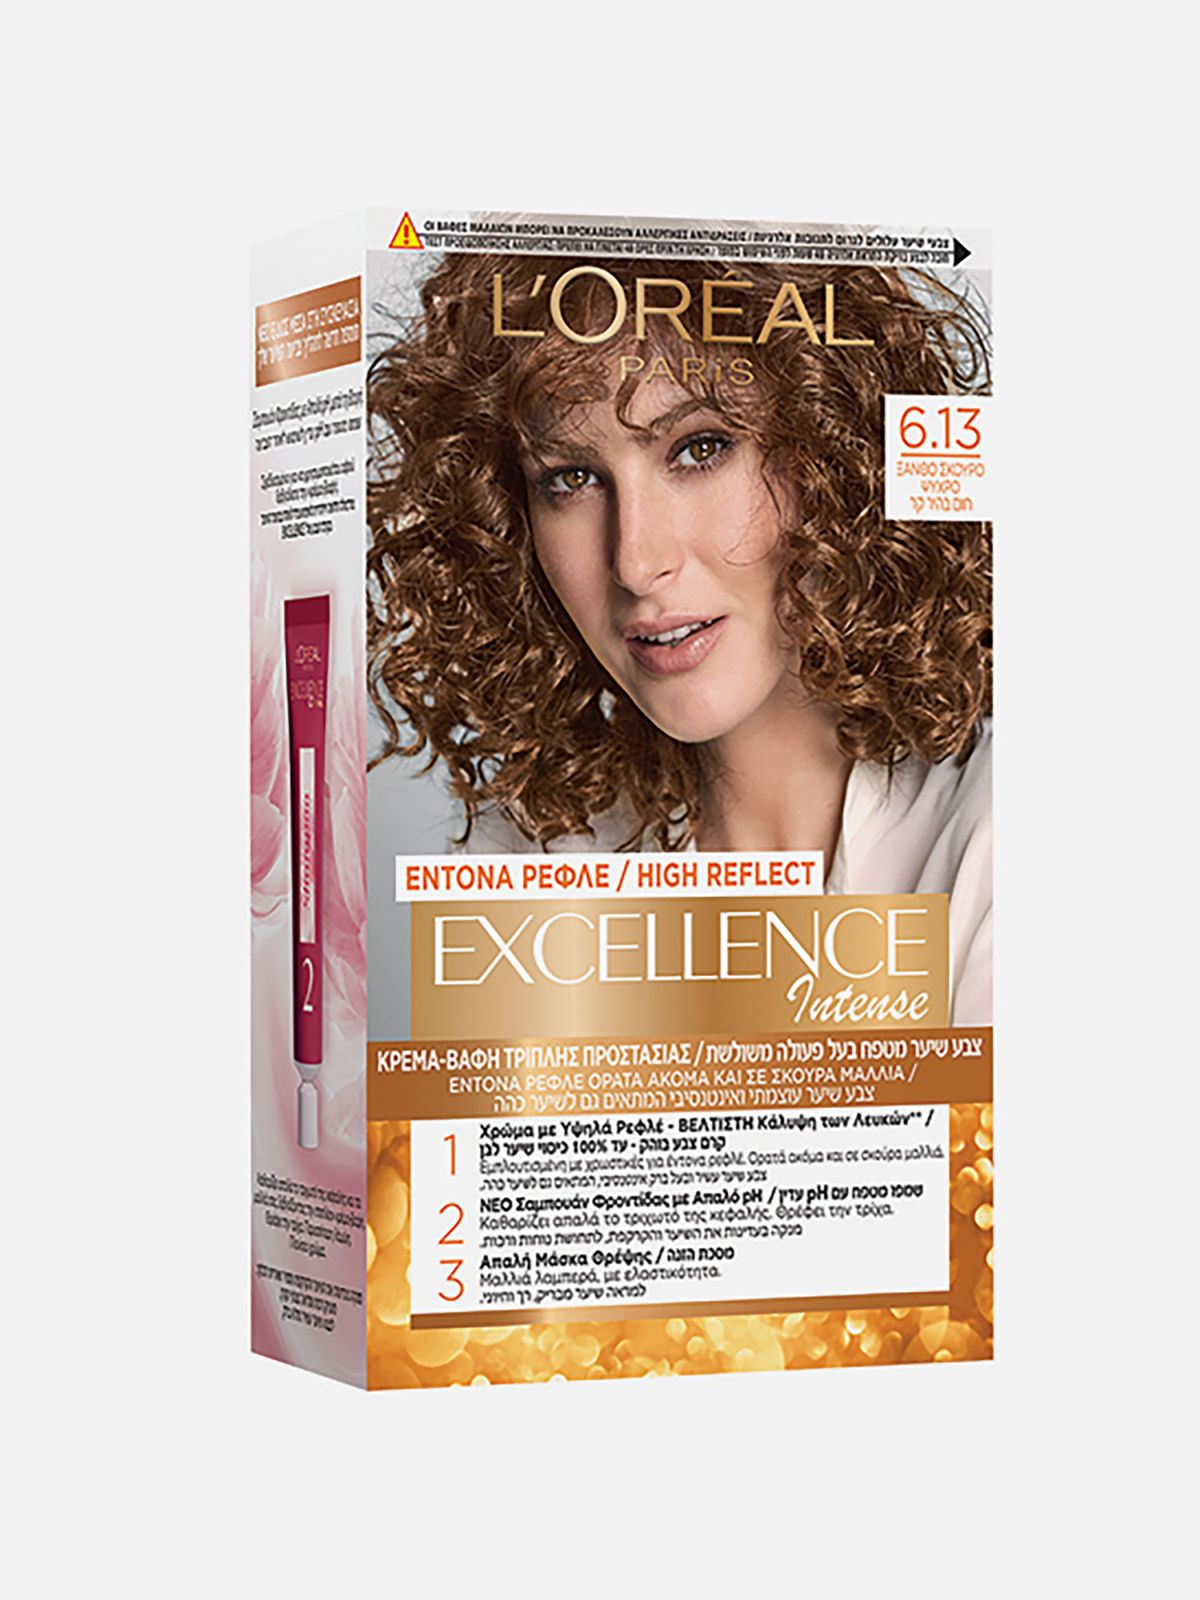  צבע לשיער Excellence Intense של EXCELLENCE